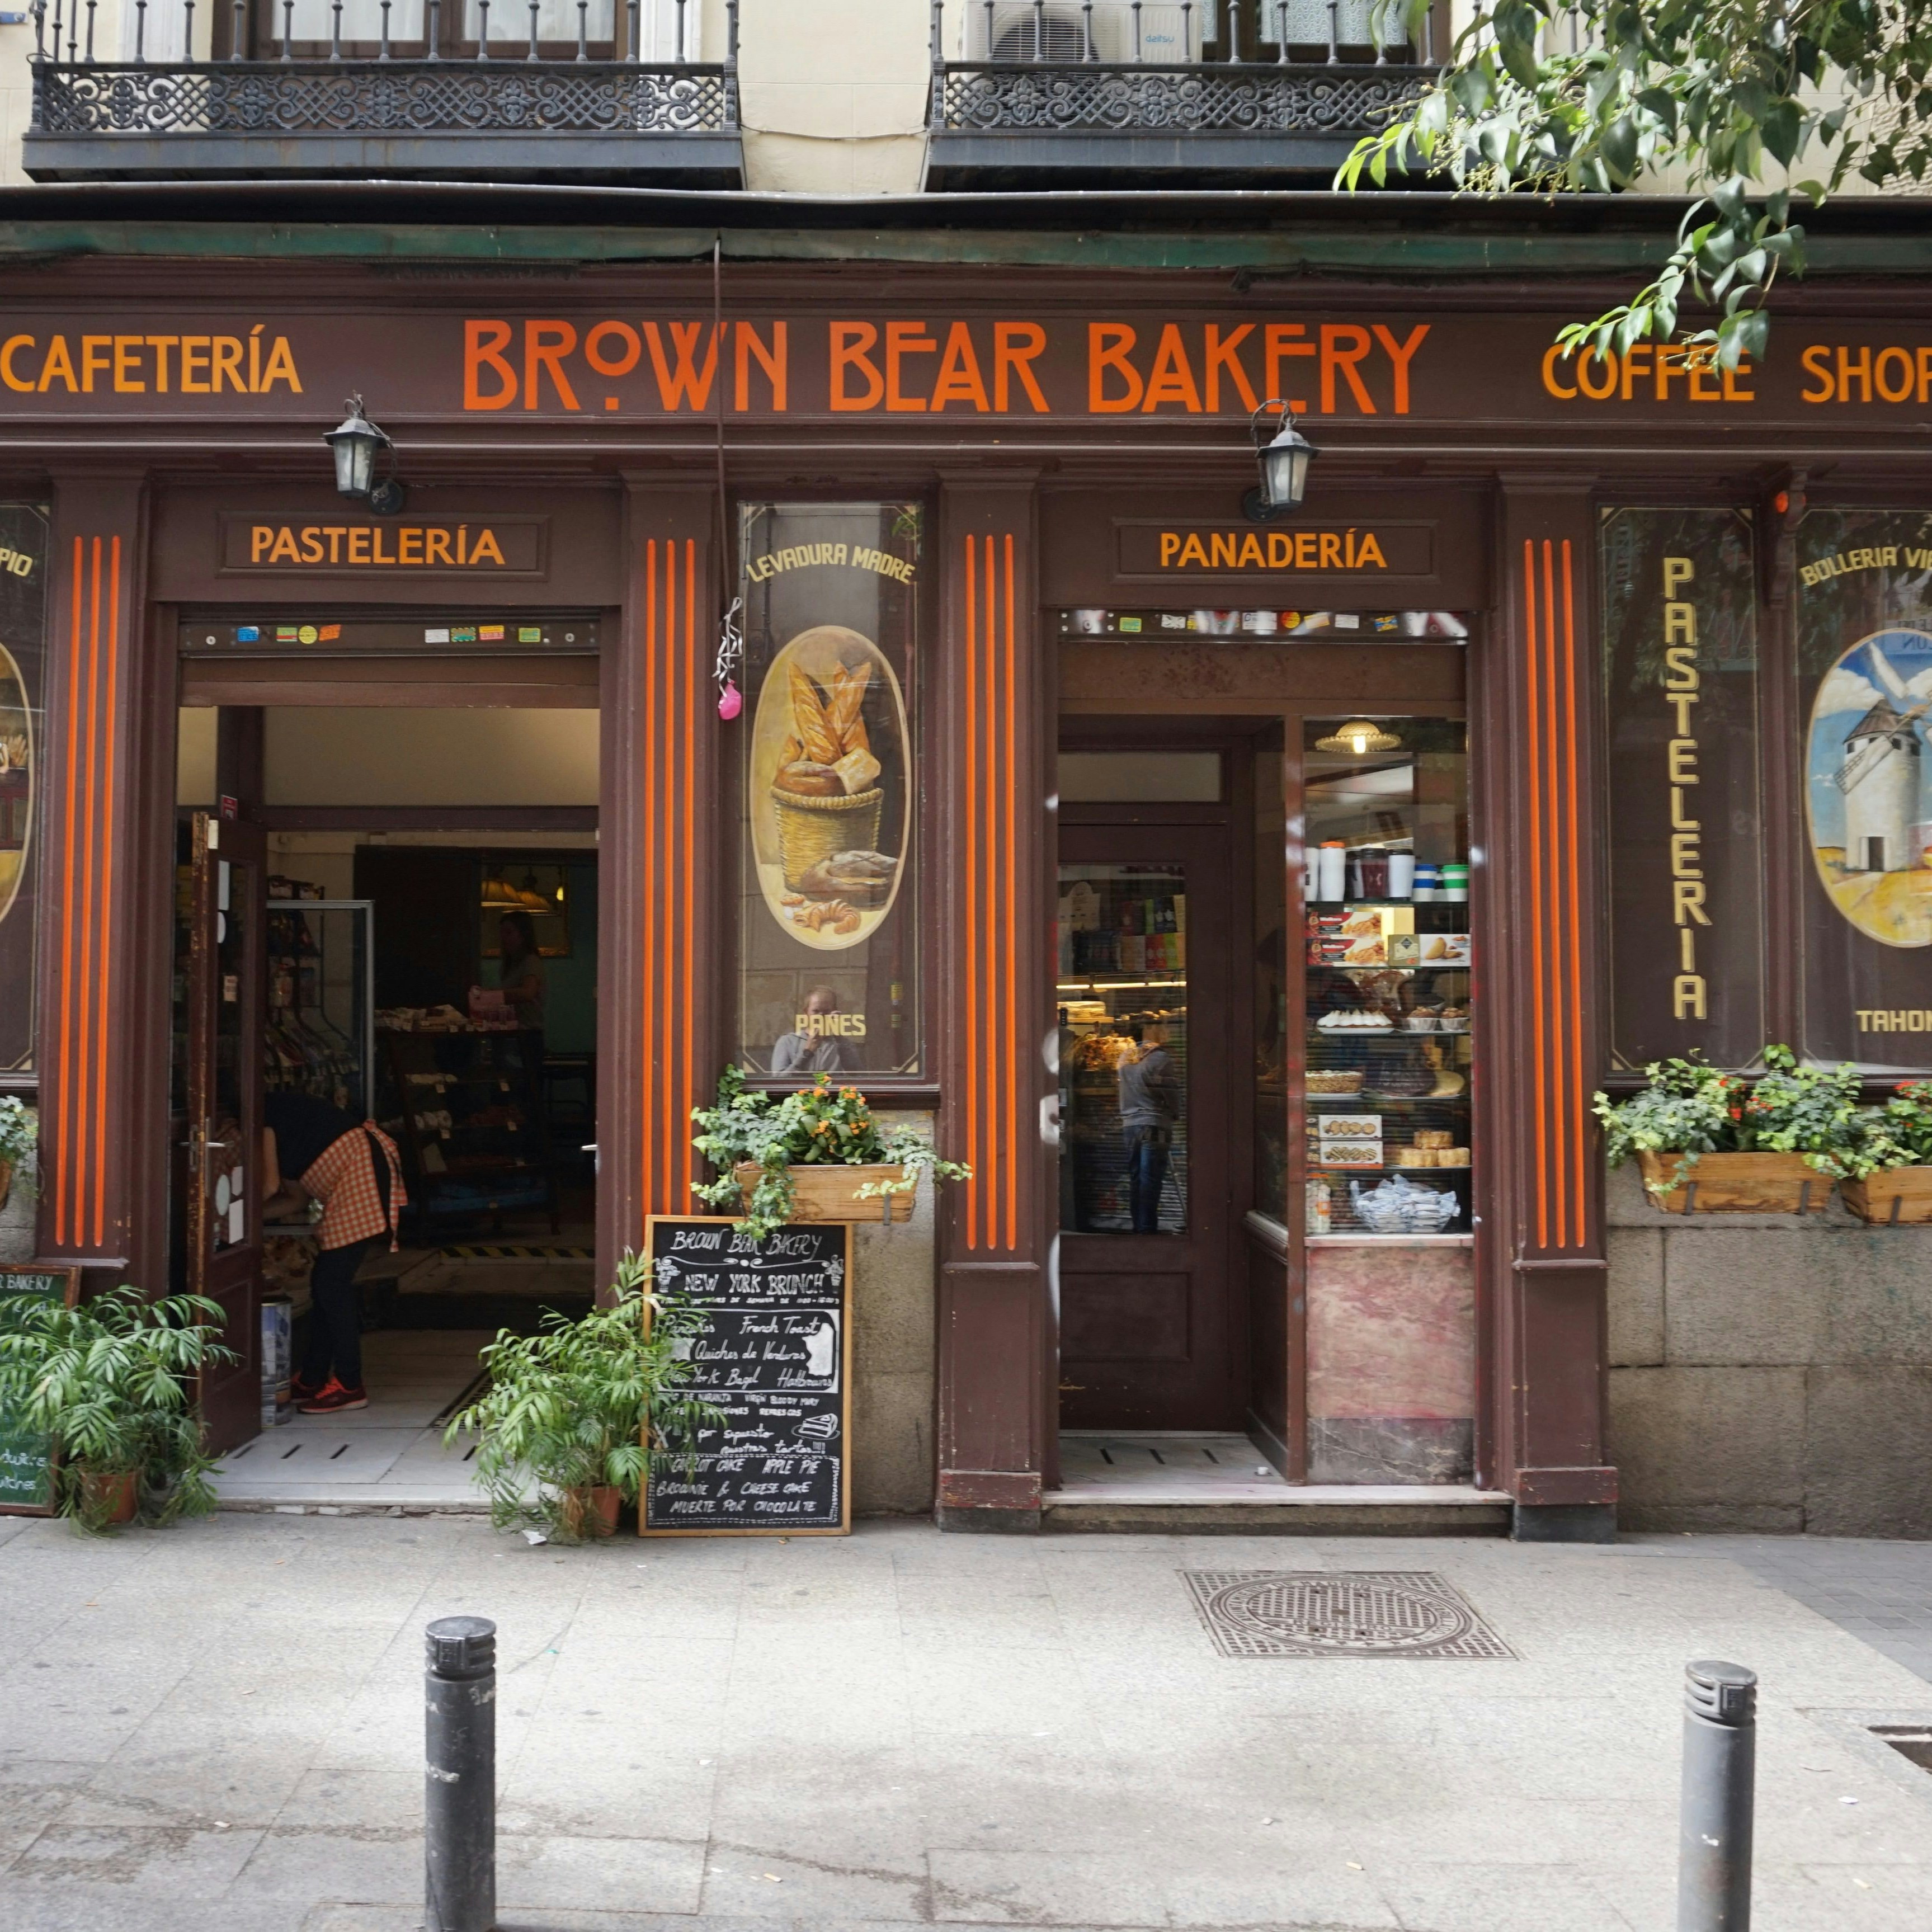 Brown Bear Bakery in Barrio de Huertas.